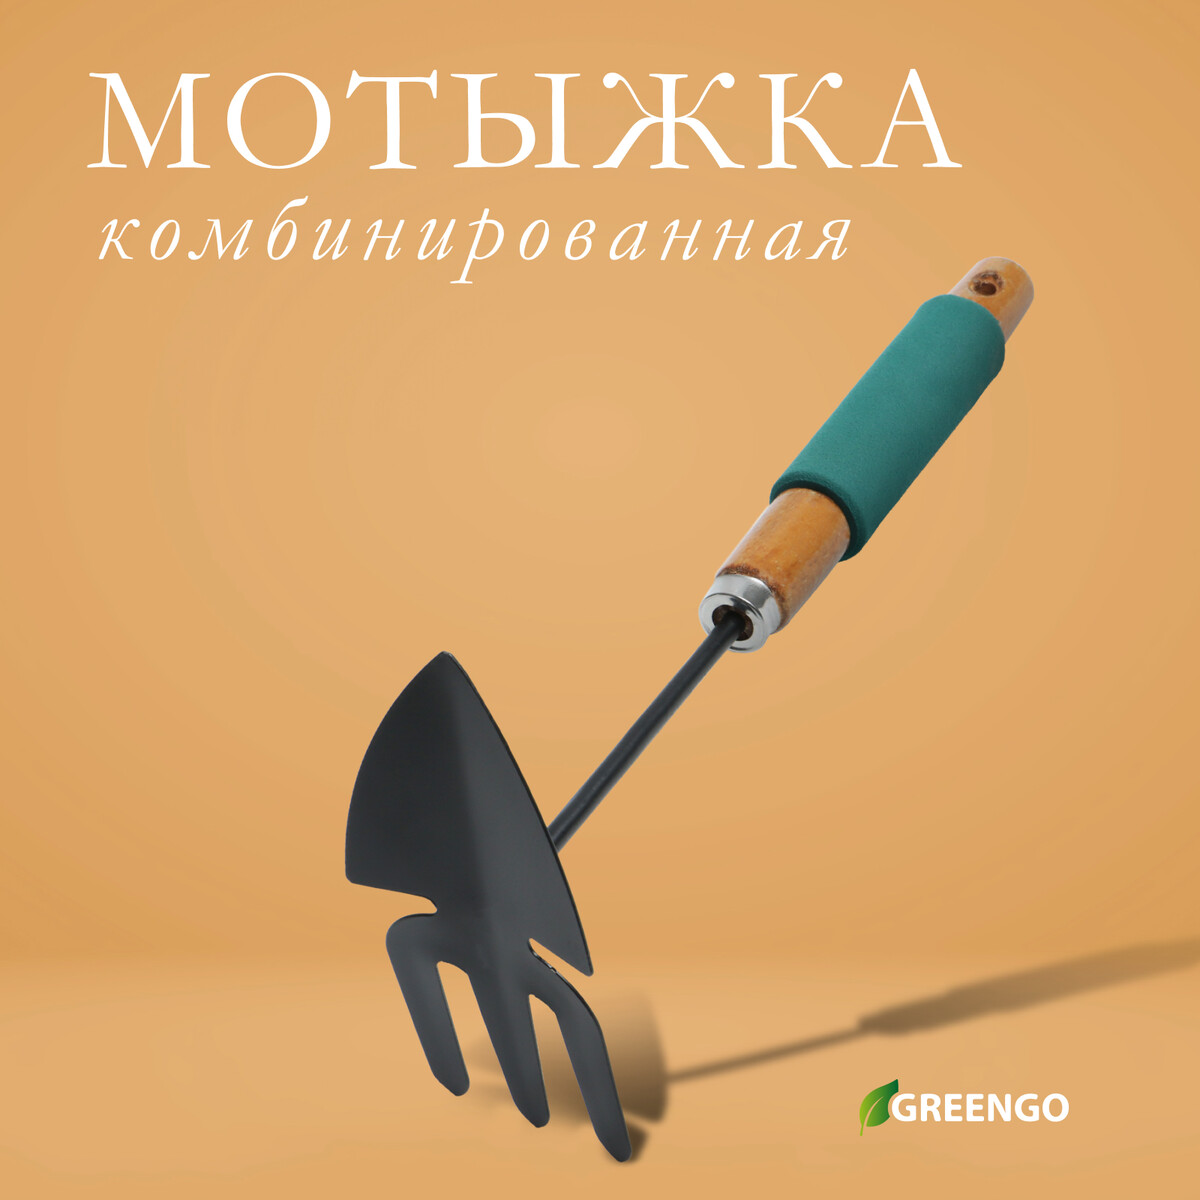 Мотыжка комбинированная greengo, длина 30 см, деревянная ручка с поролоном мотыжка комбинированная длина 29 см 3 зубца пластиковая ручка зеленая